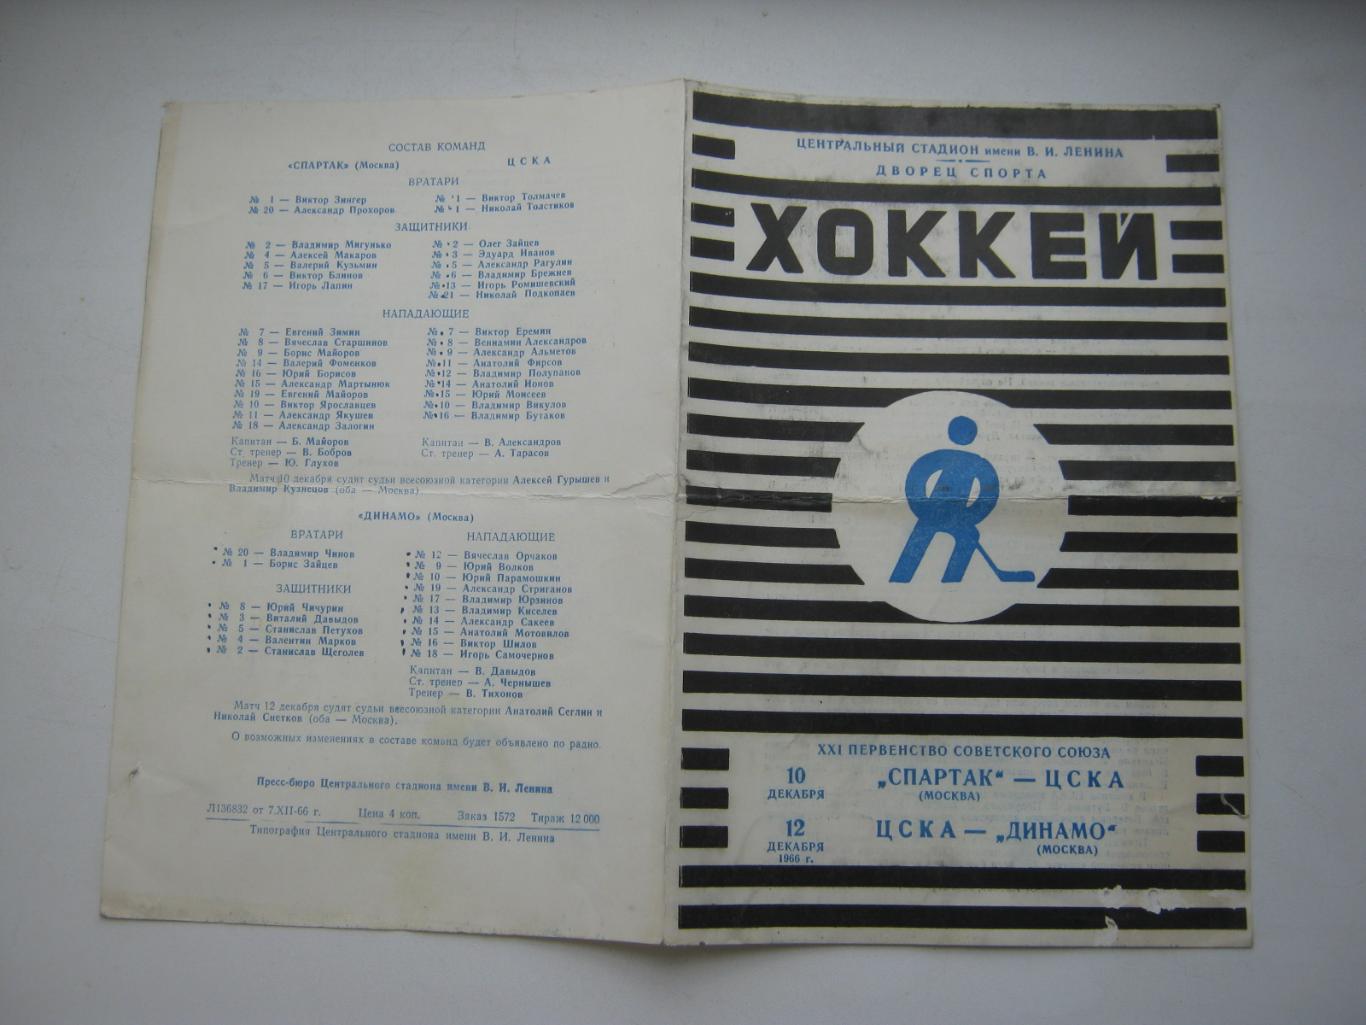 Спартак(Москва) - ЦСКА 10.12.1966 и ЦСКА - Динамо(Москва) 12.12.1966